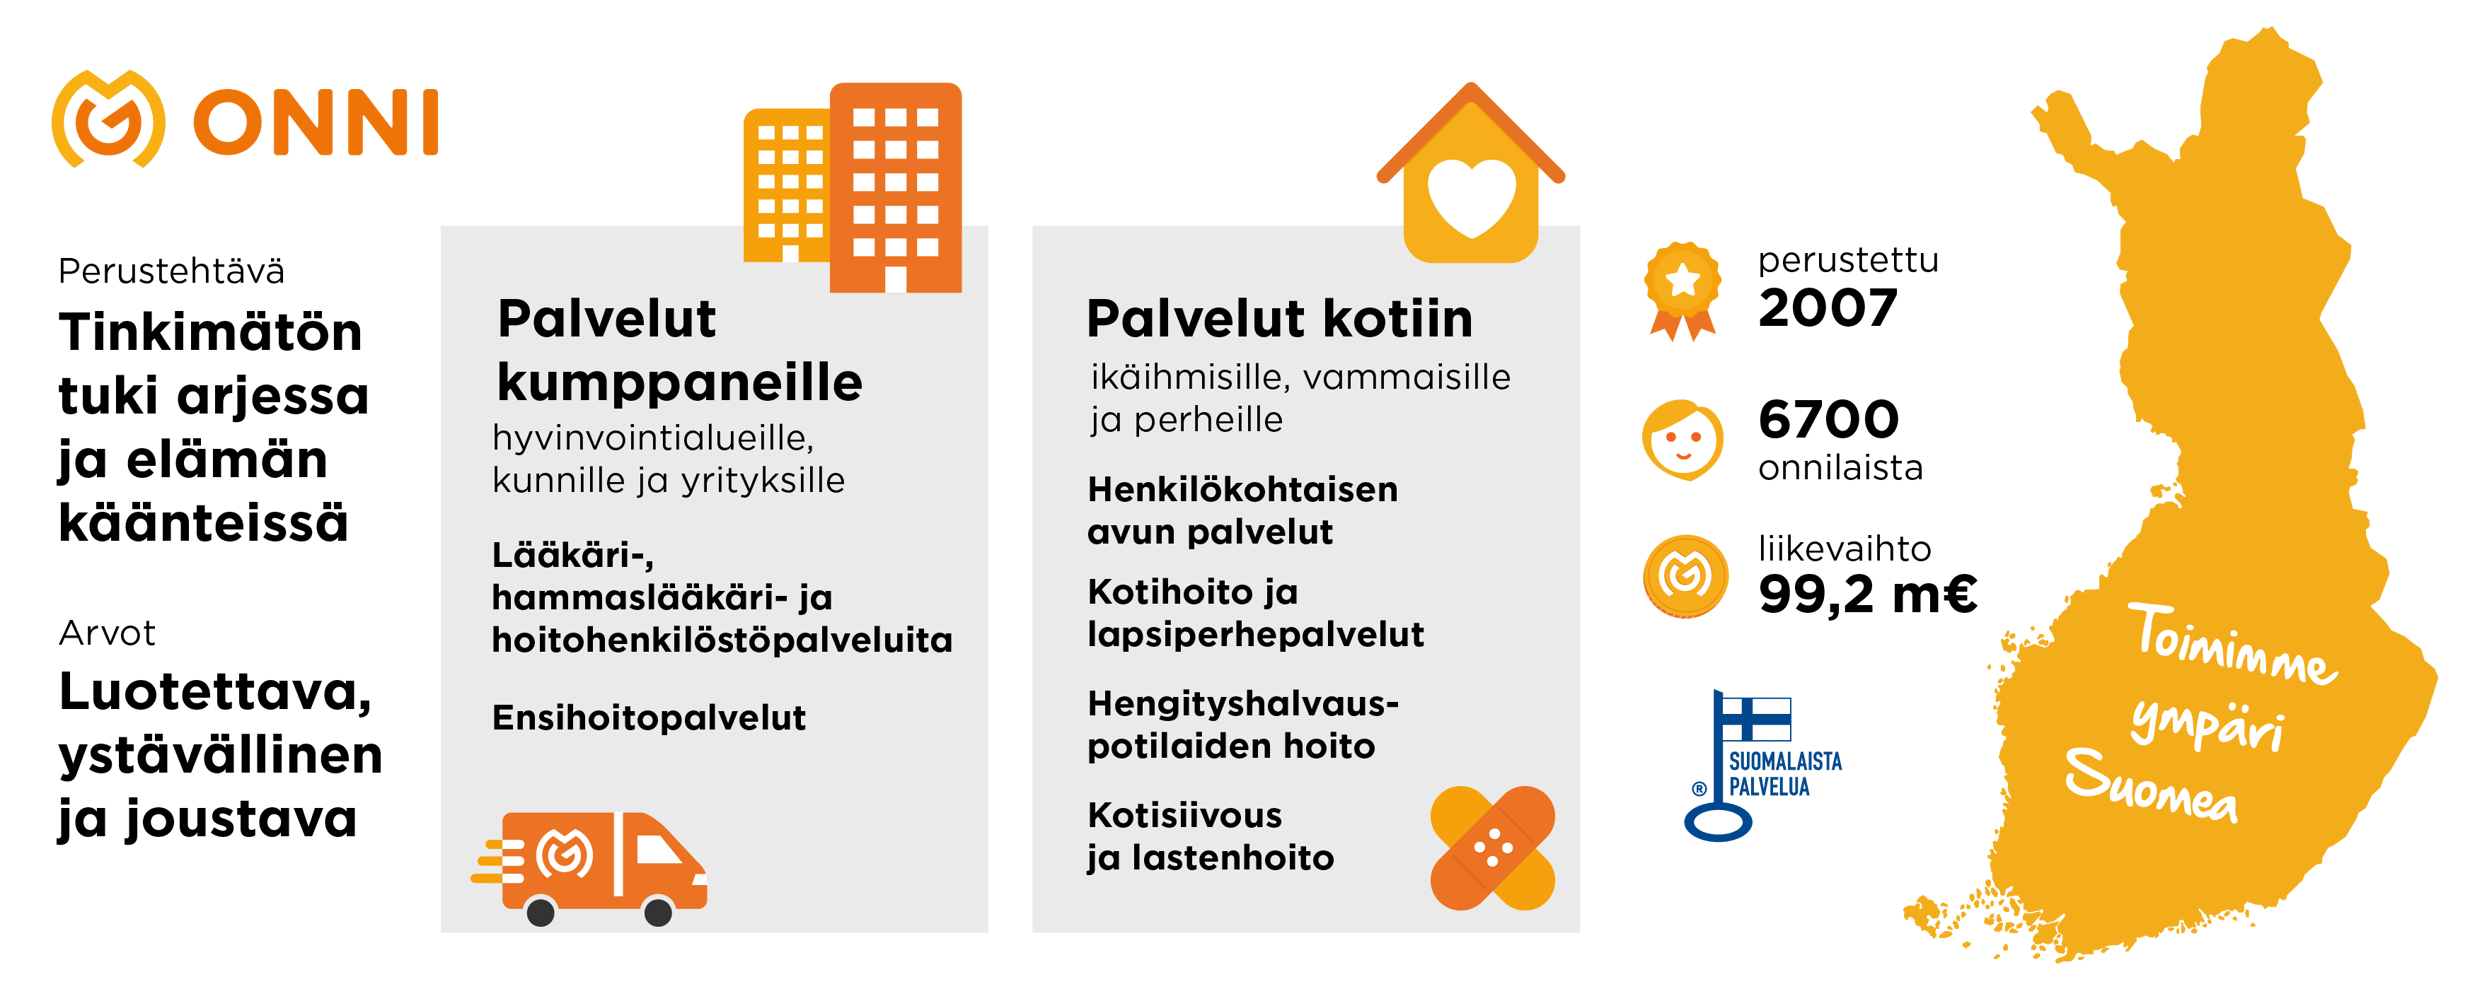 ONNIn kotiin vietävät palvelut toimivat eripuolilla Suomea ja tuovat apua arkeen mahdollistaen itsenäisen elämän kotona, lisäten hyvinvointia ja osallistumista yhteiskuntaan. ONNI avustaja on Suomen suurin yksityinen kotiin vietävien vammaispalveluiden tuottaja. ONNI kotihoito tarjoaa ammatillisia palveluita kotiin ikääntyneille, vammaisille ja lapsiperheille sekä hengityshalvauspotilaiden hoitoa. ONNIn kuluttajapalvelut tarjoavat kotisiivousta ja lastenhoitopalveluita. ONNI akuutti on yksi Suomen suurimpia yksityisiä ensihoidon tuottajia, joka tuottaa sekä ensihoito- että potilassiirtokuljetuksia. ONNI kumppani tarjoaa lääkäri-, suun terveydenhuollon ja hoitajahenkilöstöpalveluita.